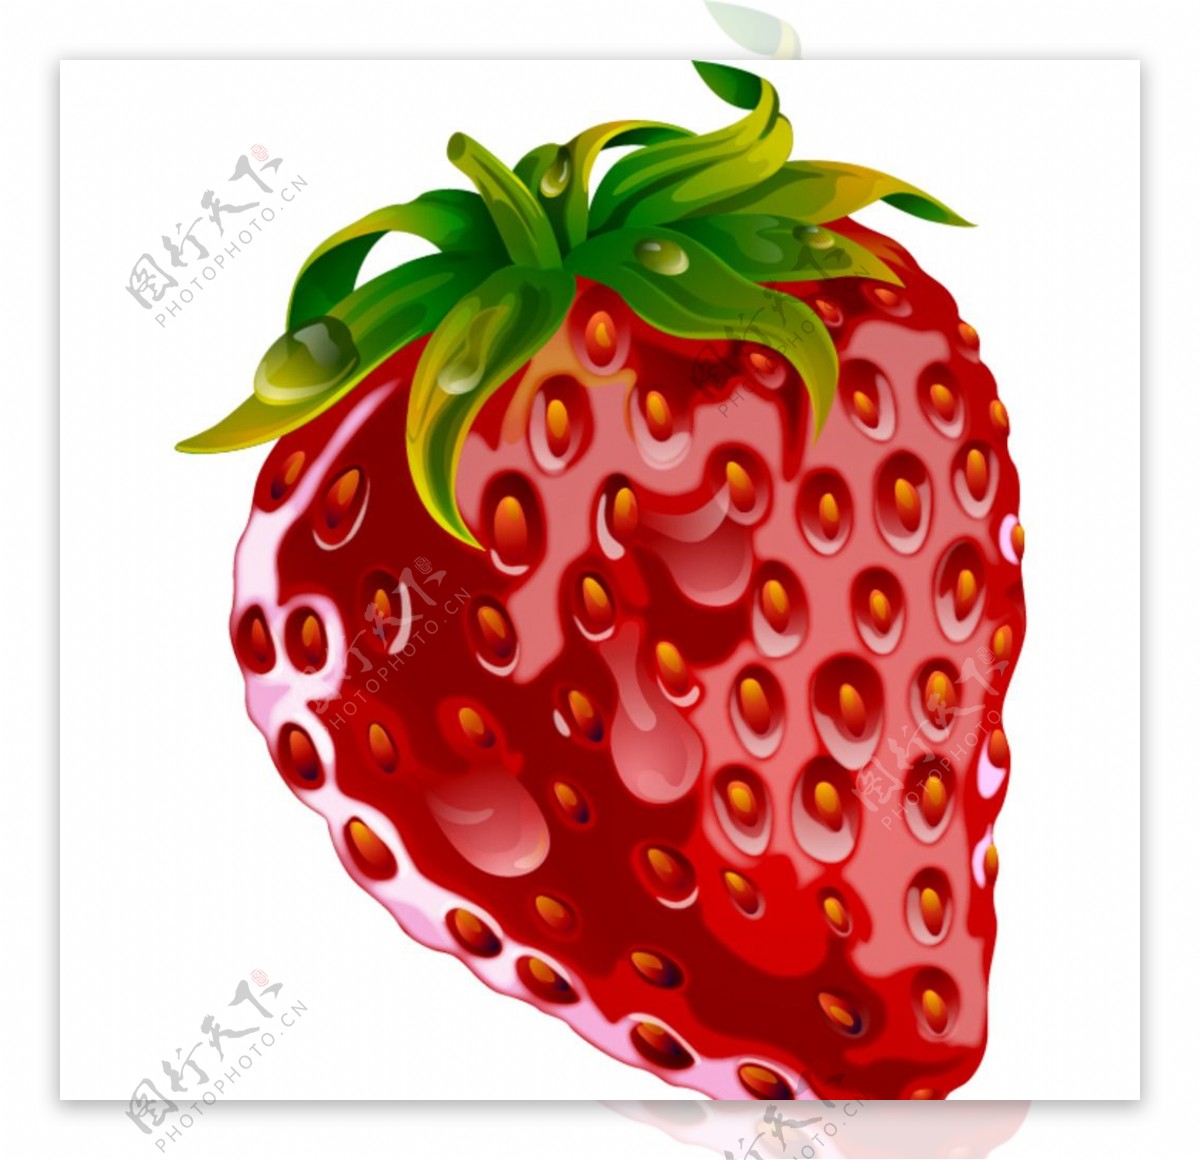 草莓水果矢量素材